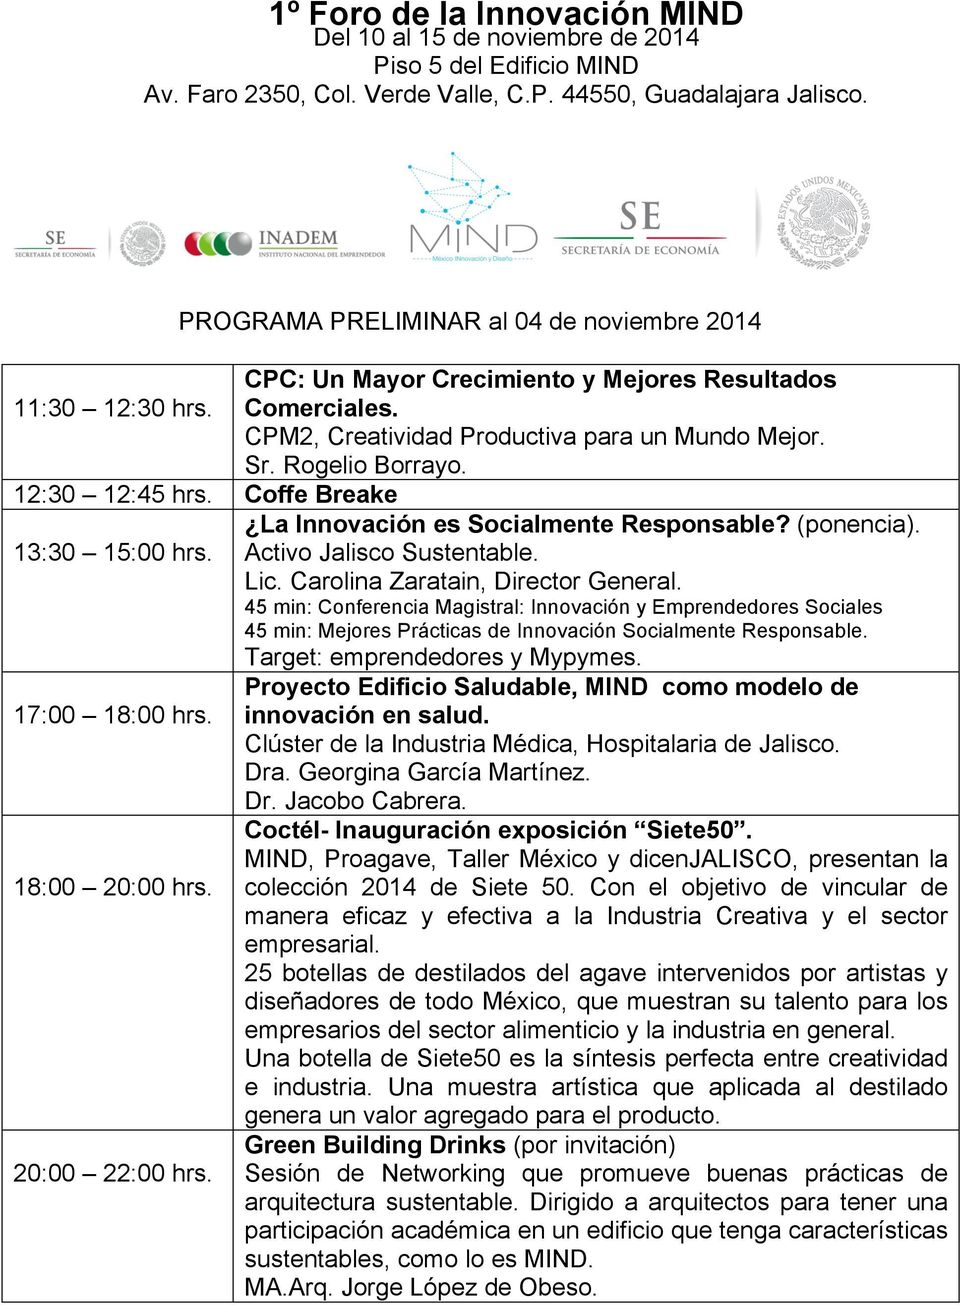 45 min: Conferencia Magistral: Innovación y Emprendedores Sociales 45 min: Mejores Prácticas de Innovación Socialmente Responsable. Target: emprendedores y Mypymes.